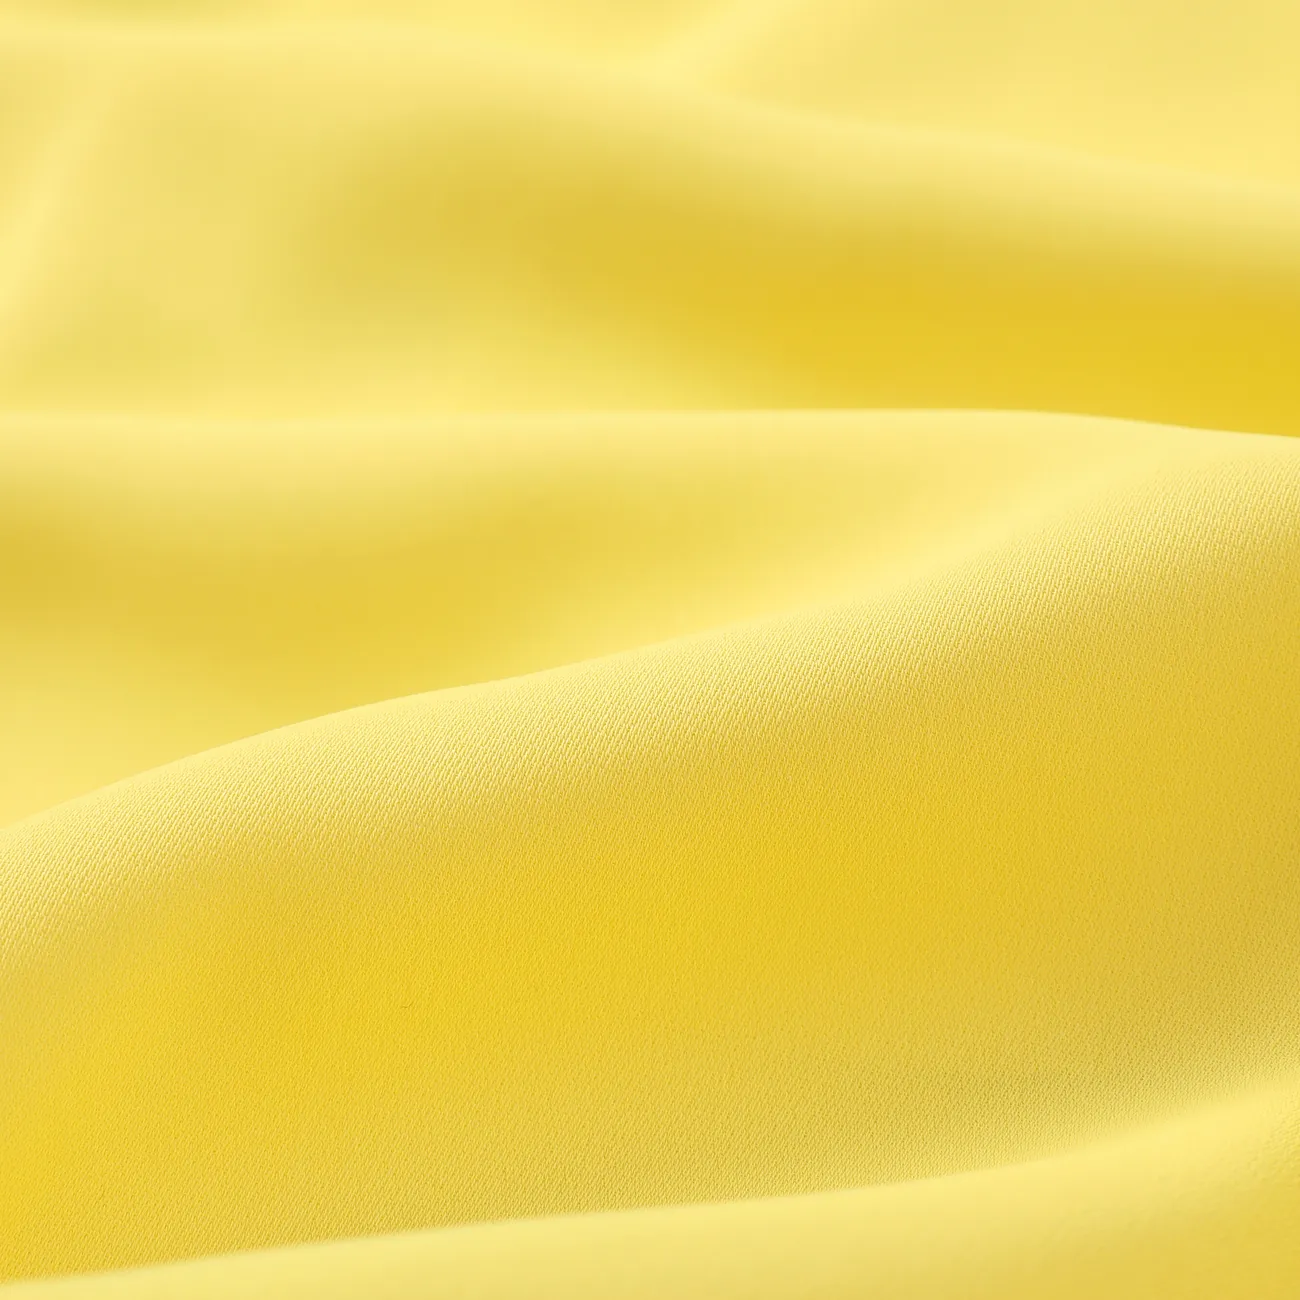 Kinder Jungen Lässig Unifarben Badehosen gelb big image 1